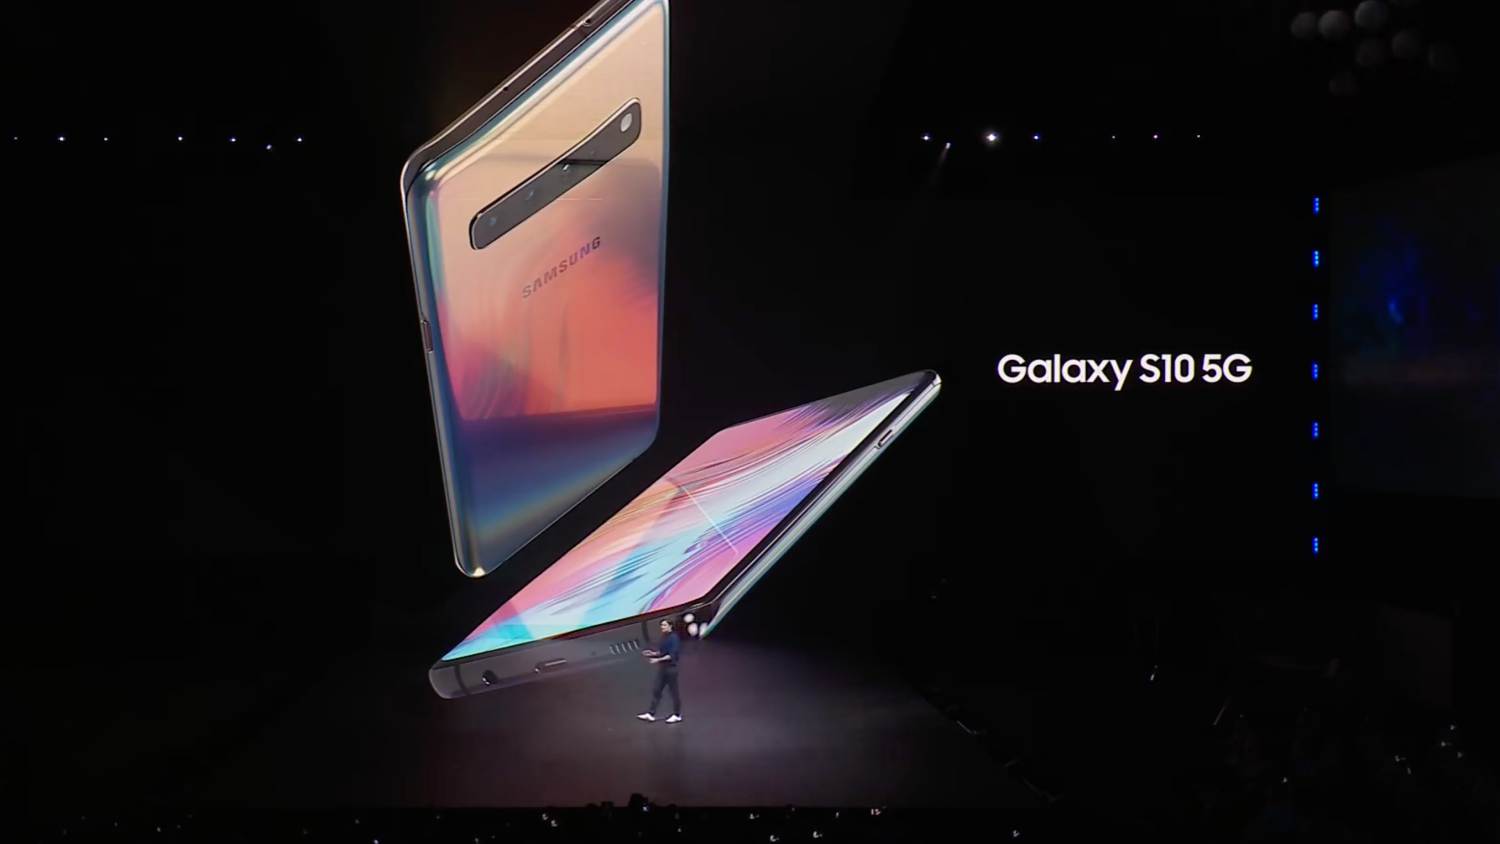 Samsung Galaxy S10 5G Diperkenalkan – Skrin 6.7-inci, Empat-Kamera Belakang, 4500mAh